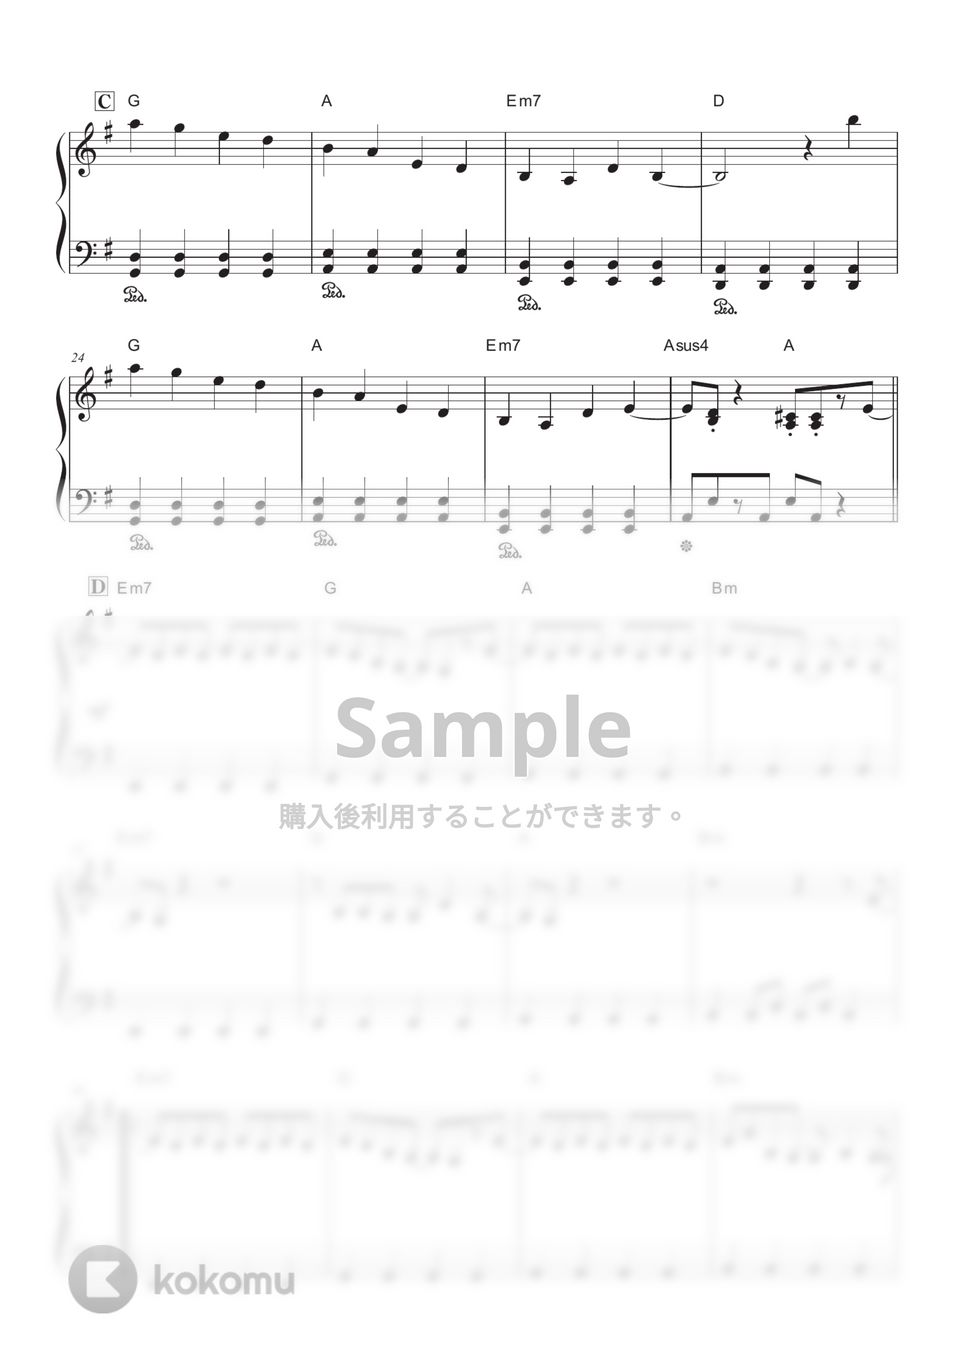 Ado - 新時代 (ウタ from ONE PIECE FILM RED) (ピアノ初中級/歌詞・コード) by OKANA